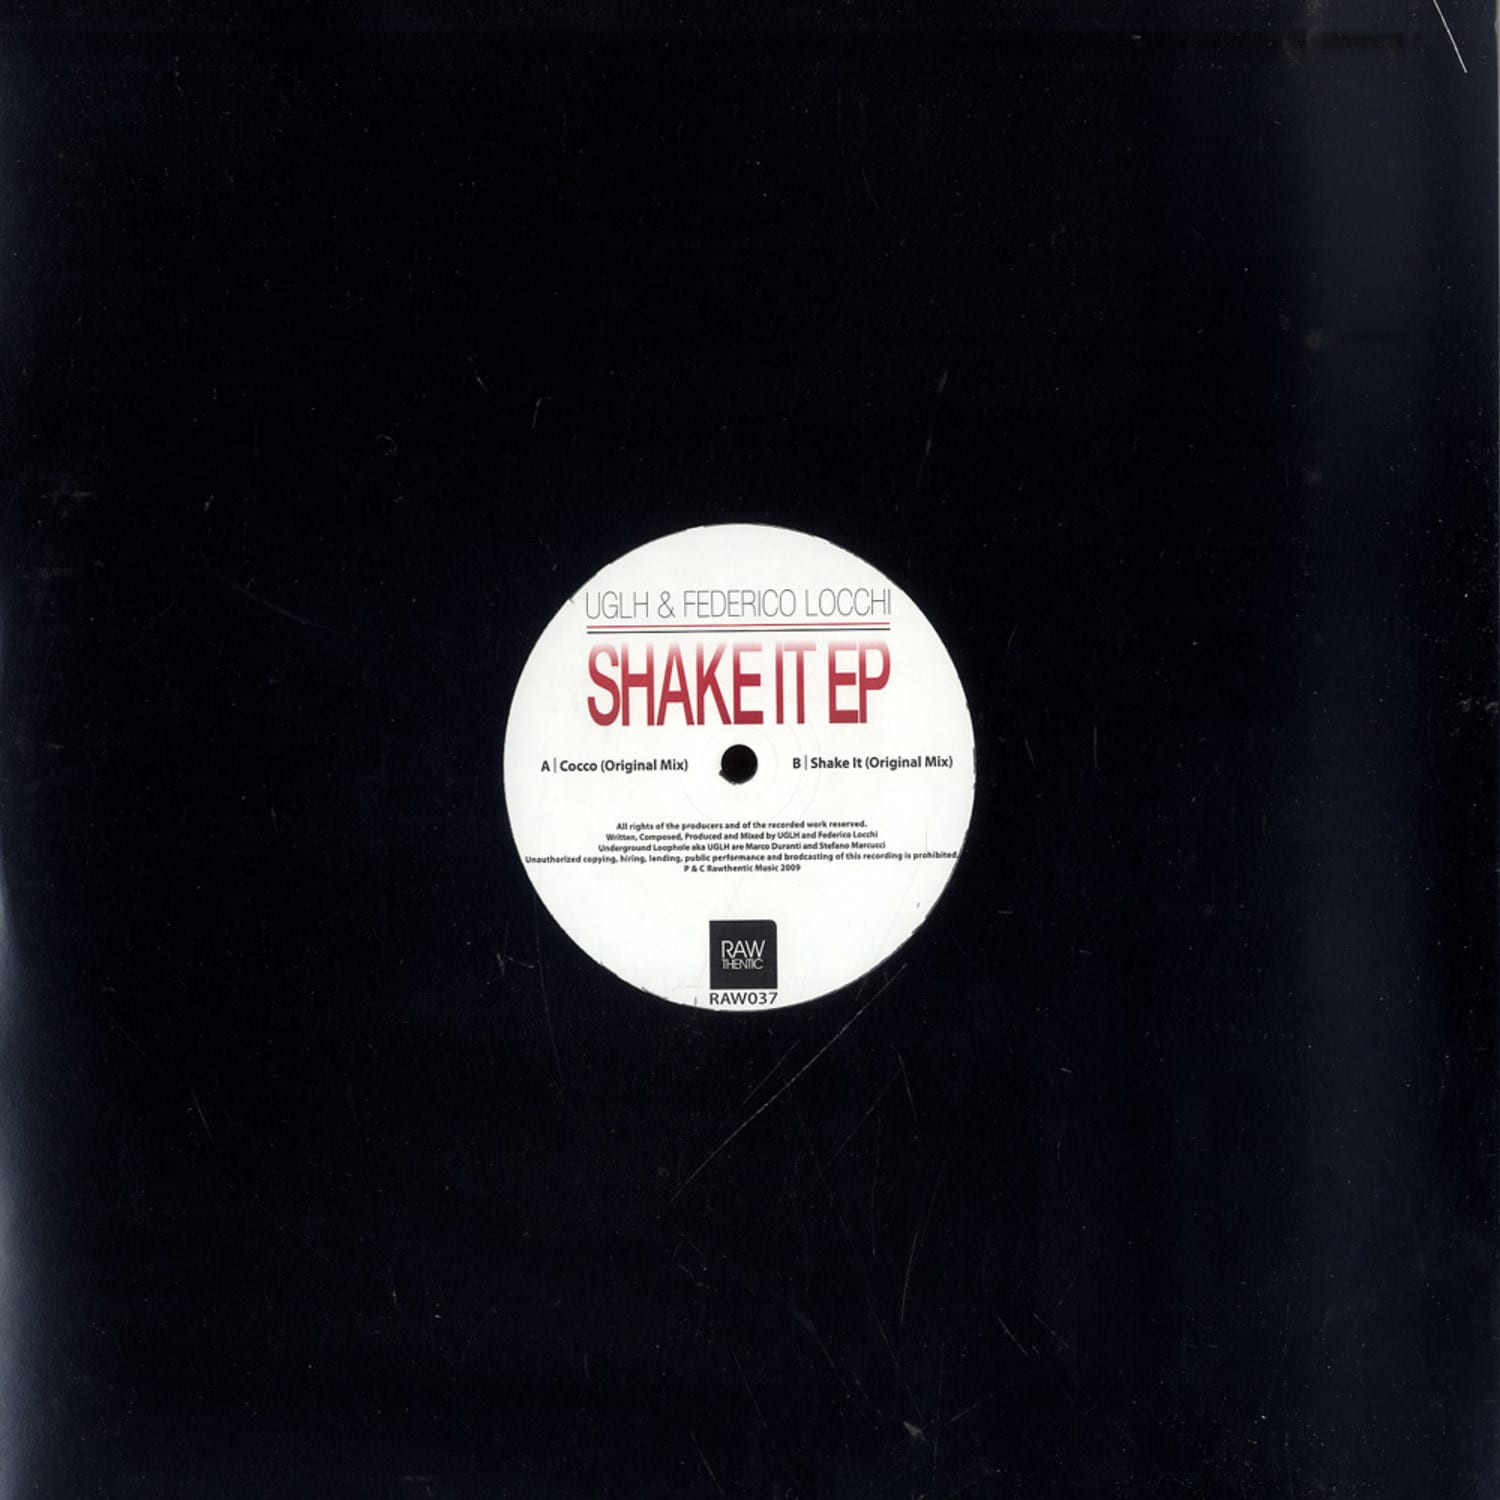 Uglh  - SHAKE IT EP